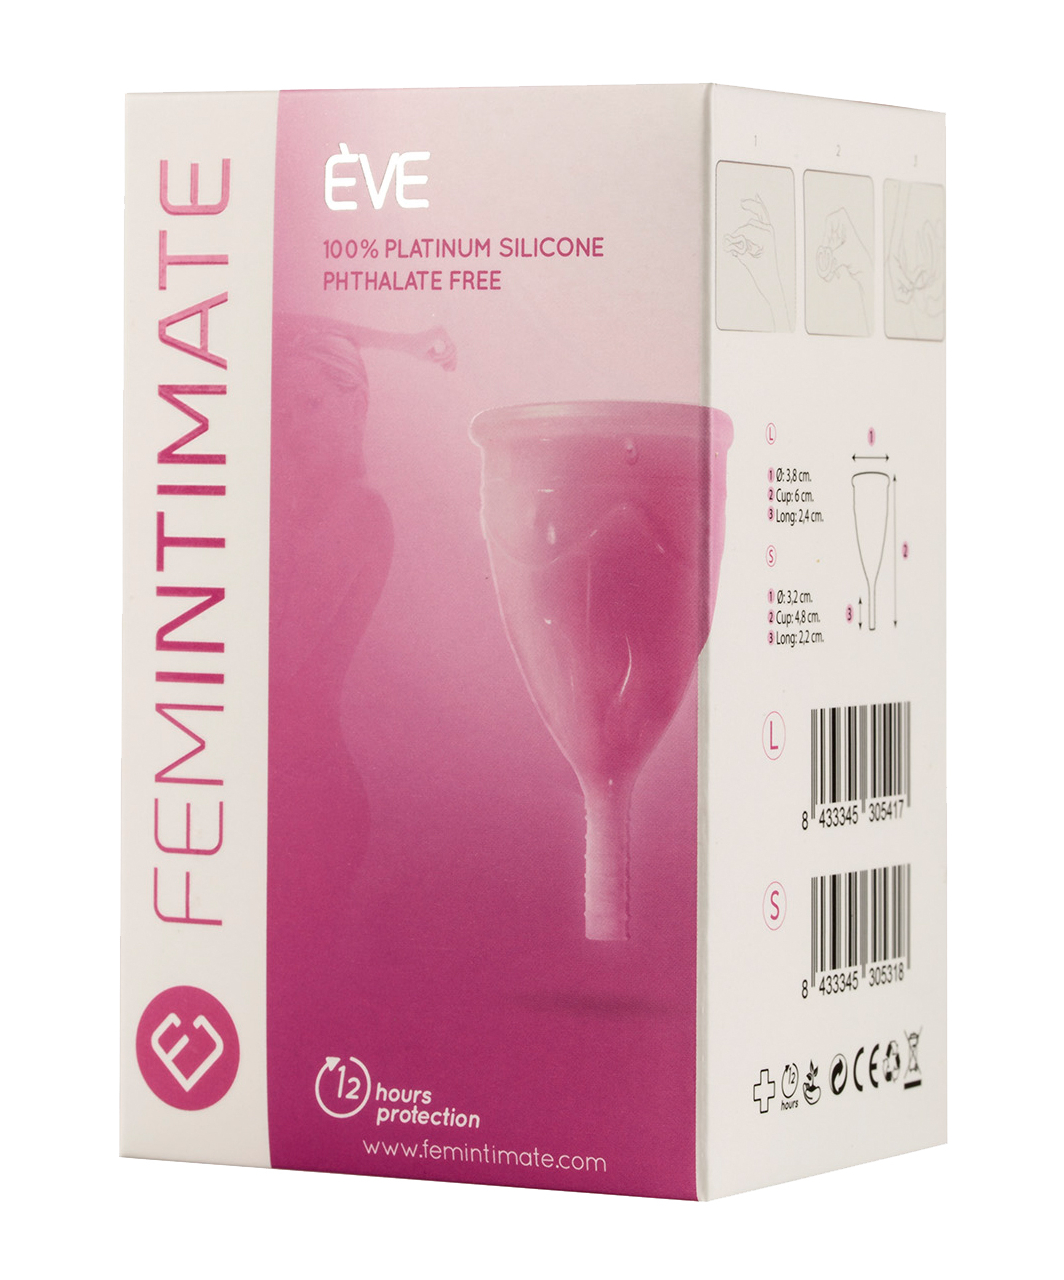 Femintimate Eve menstrual cup